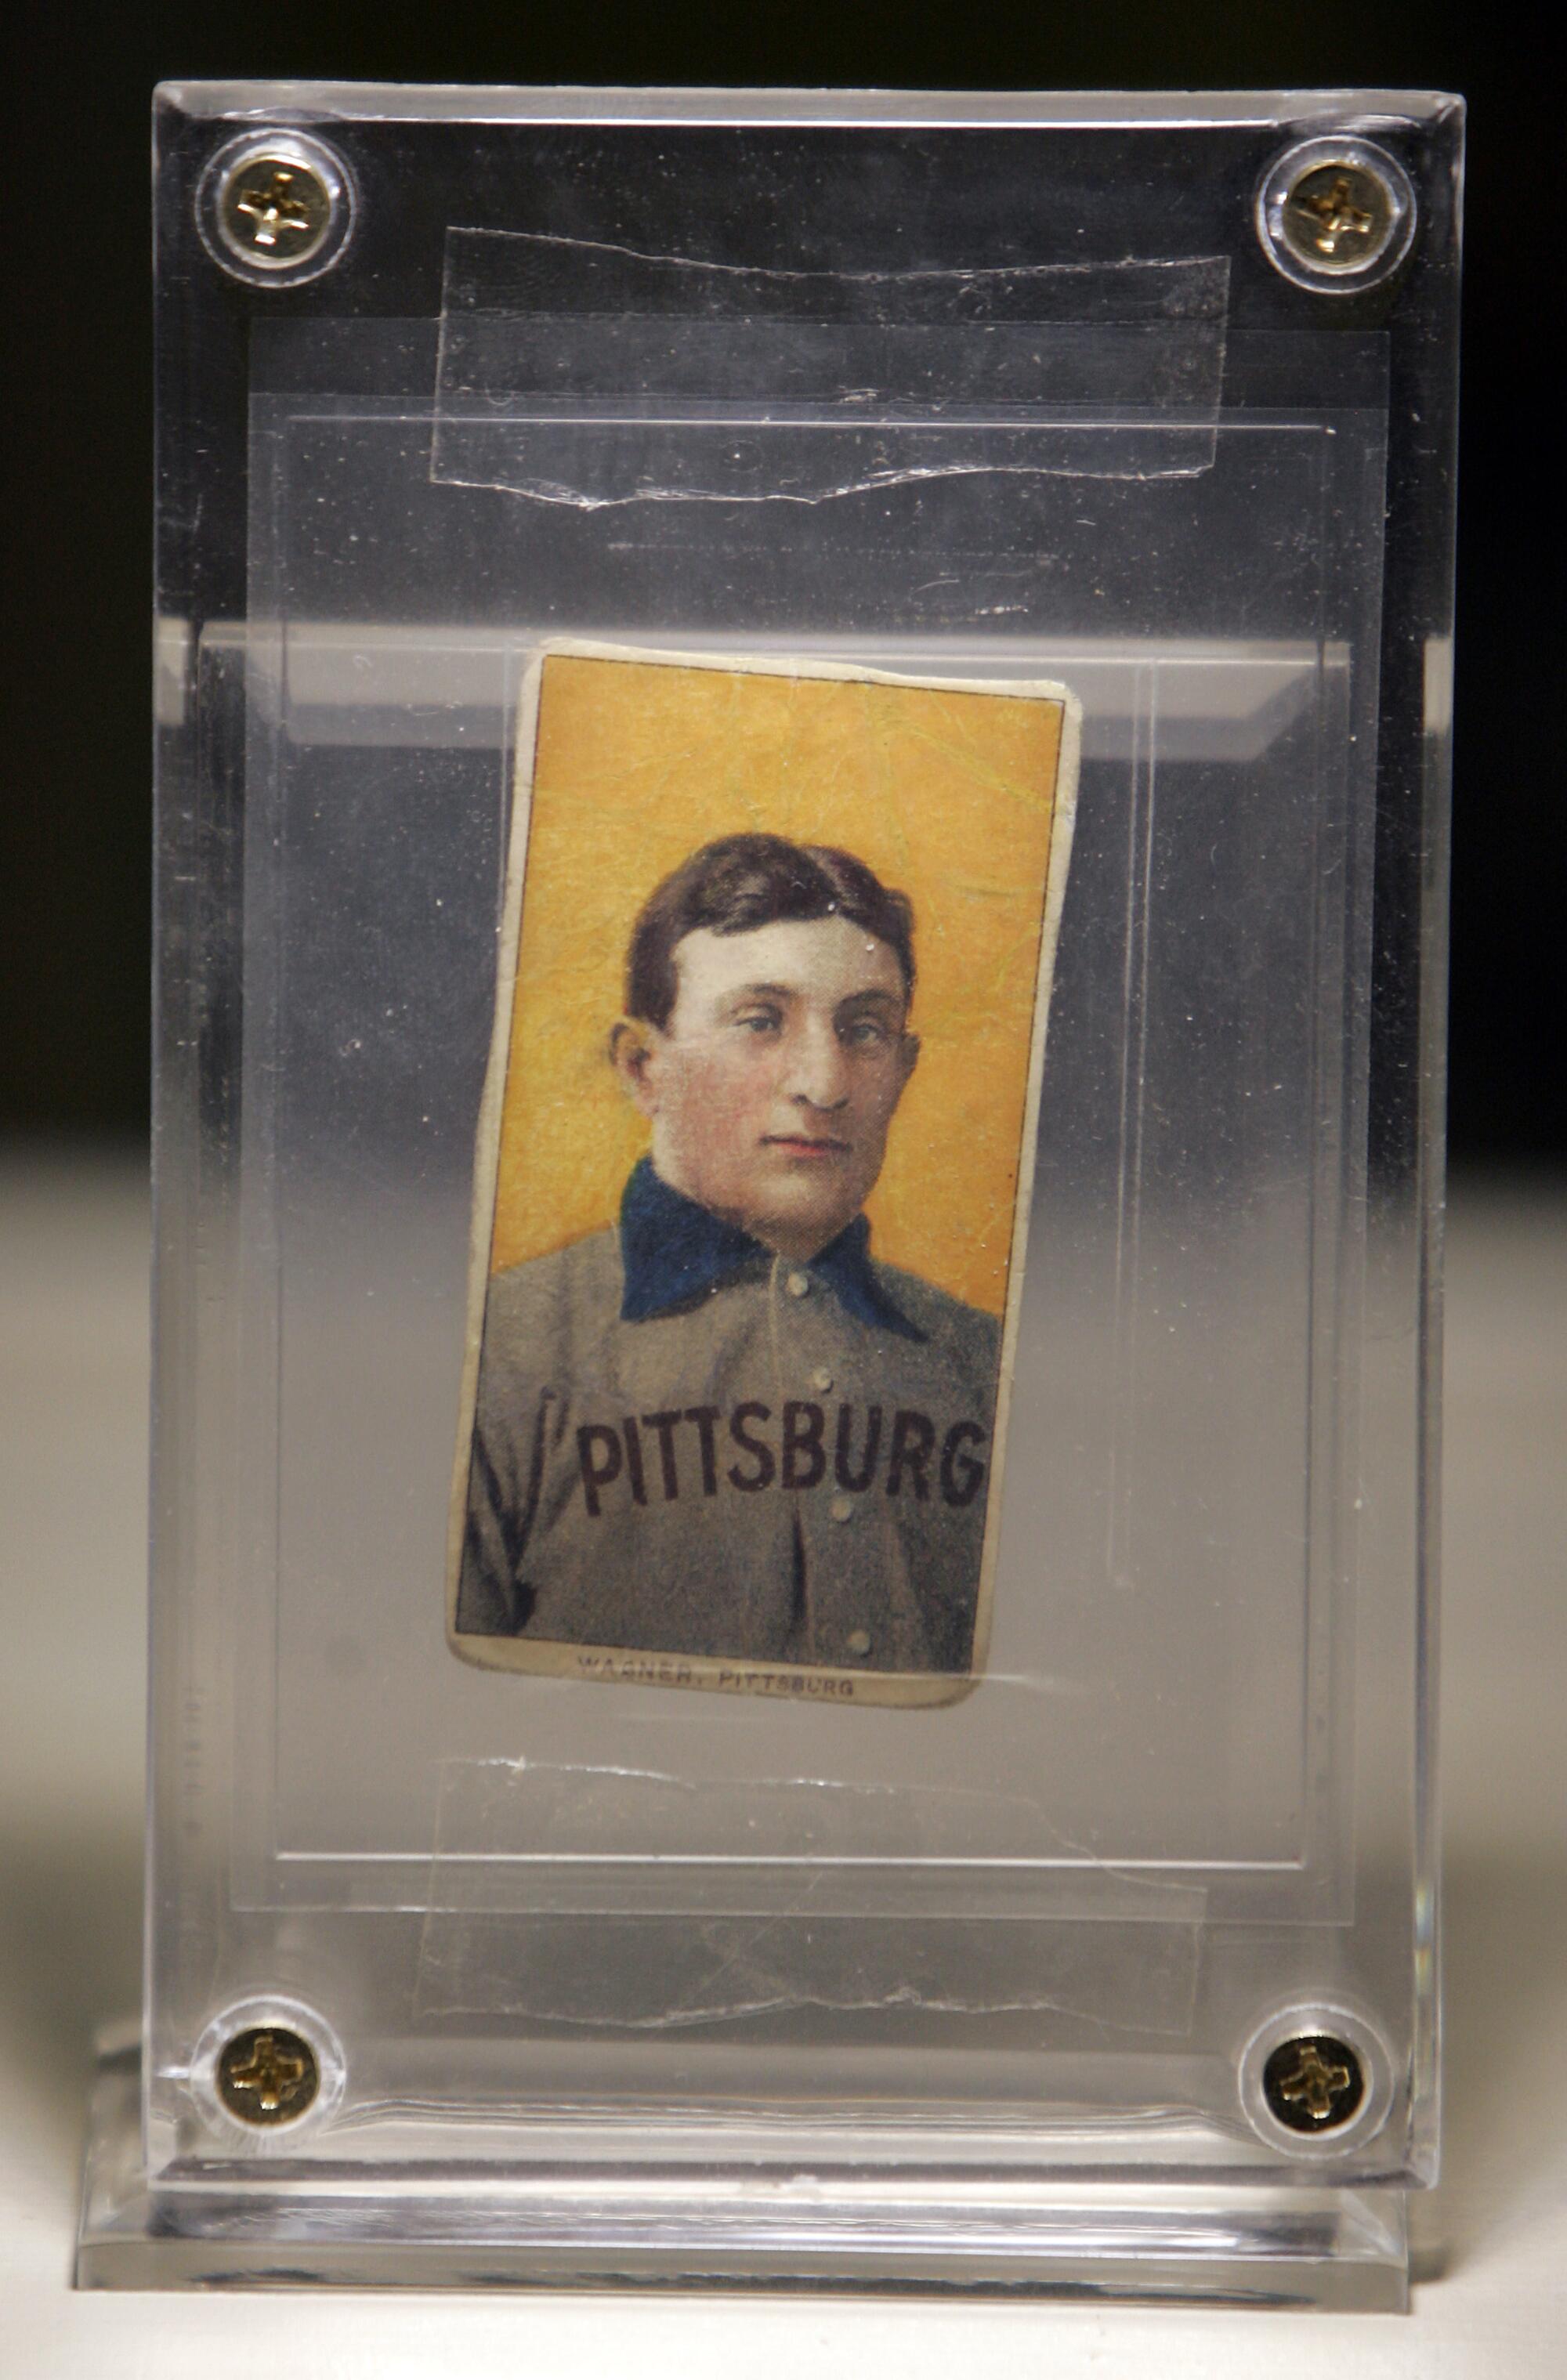 A framed Honus Wagner baseball card